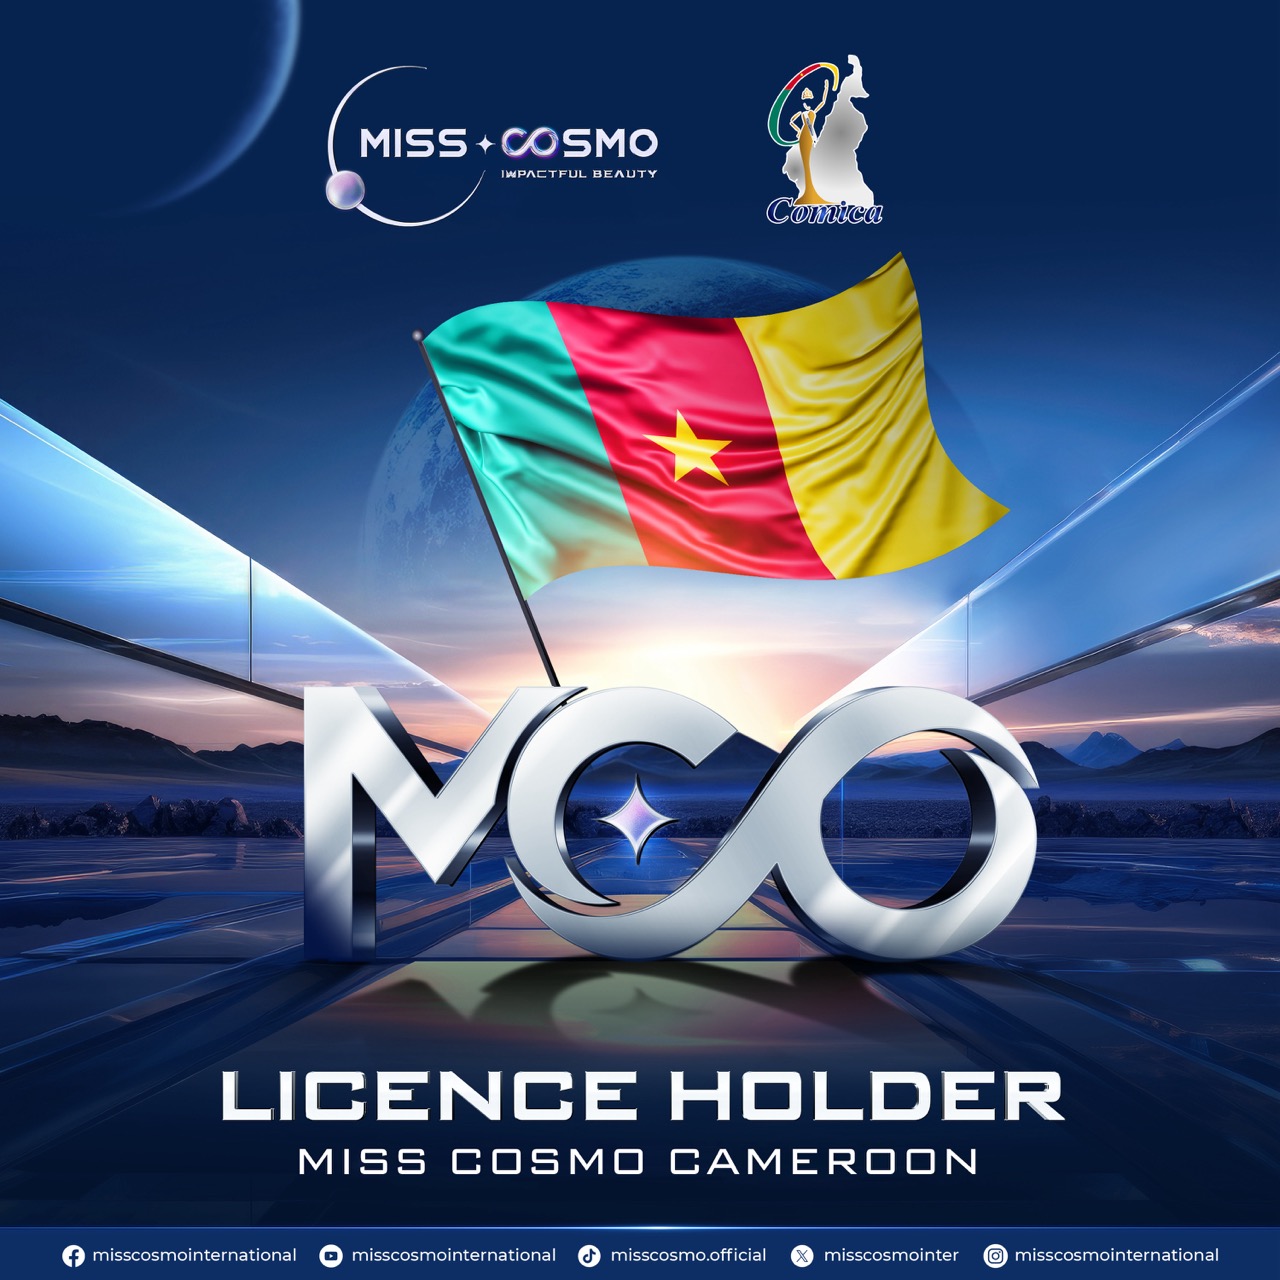 MISSCOSMO_CAMEROON lớn